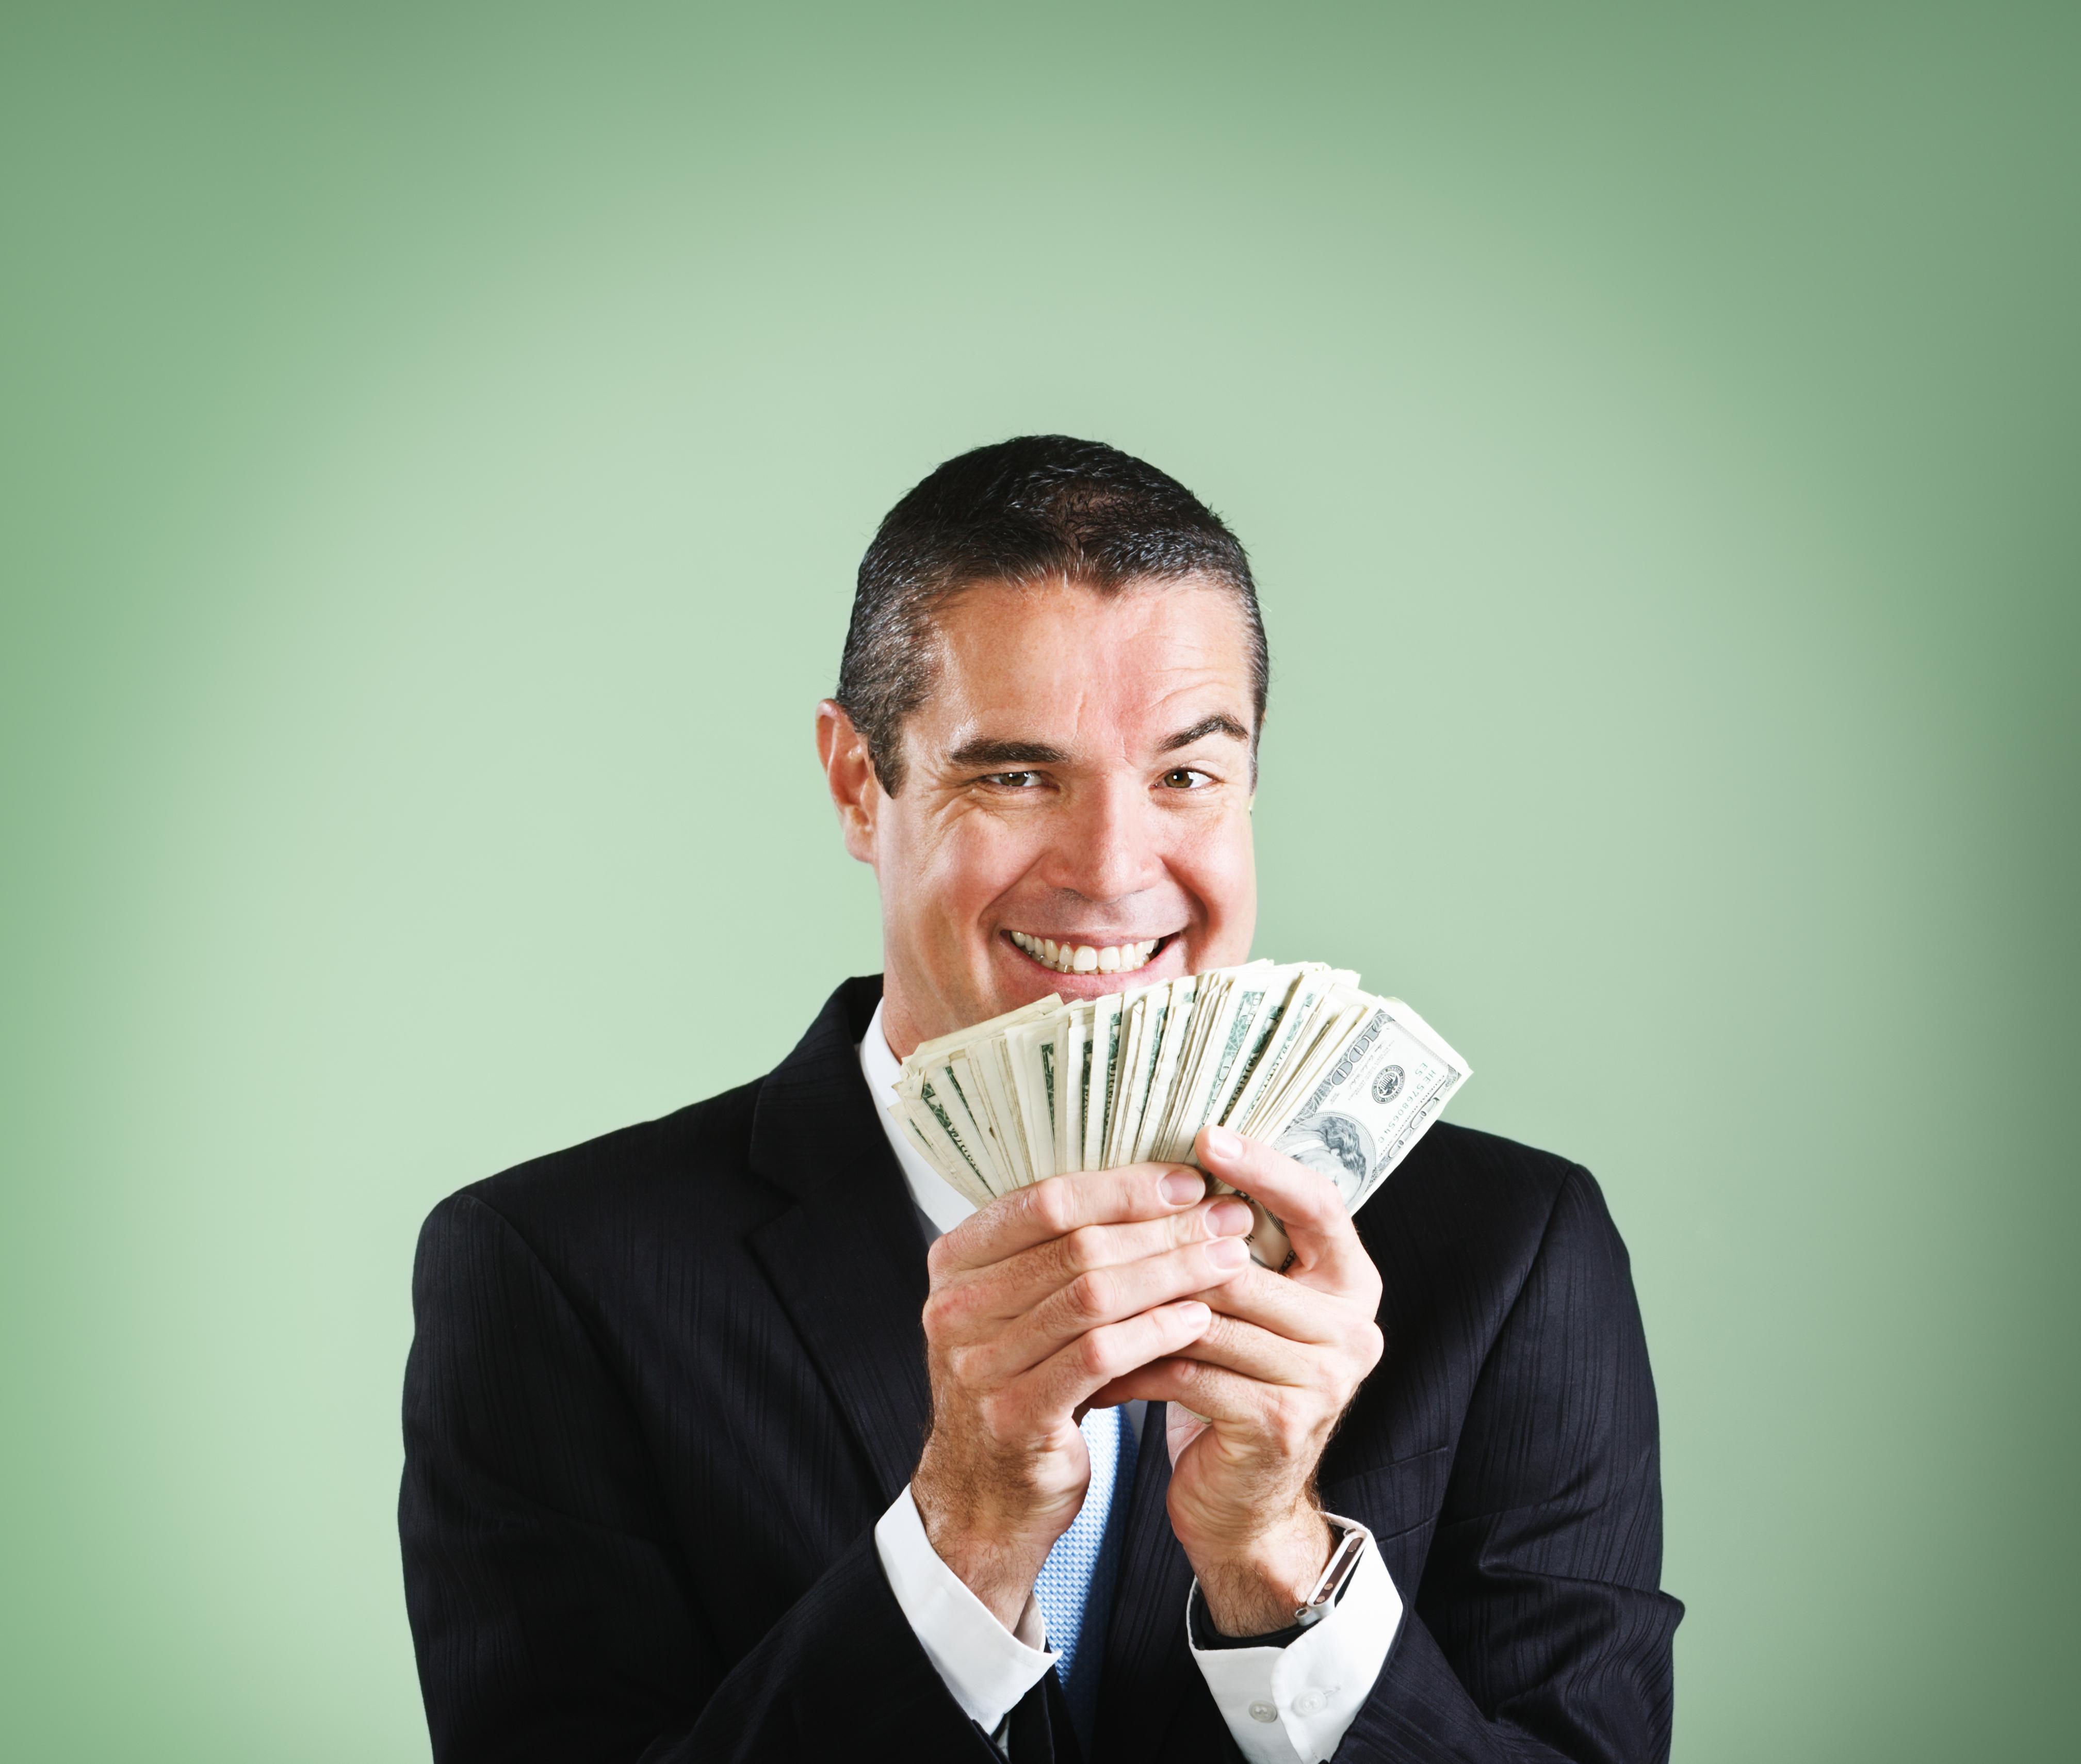 Ein gut gelaunter Geschäftsmann grinst und freut sich über eine Handvoll Dollar | Quelle: Getty Images